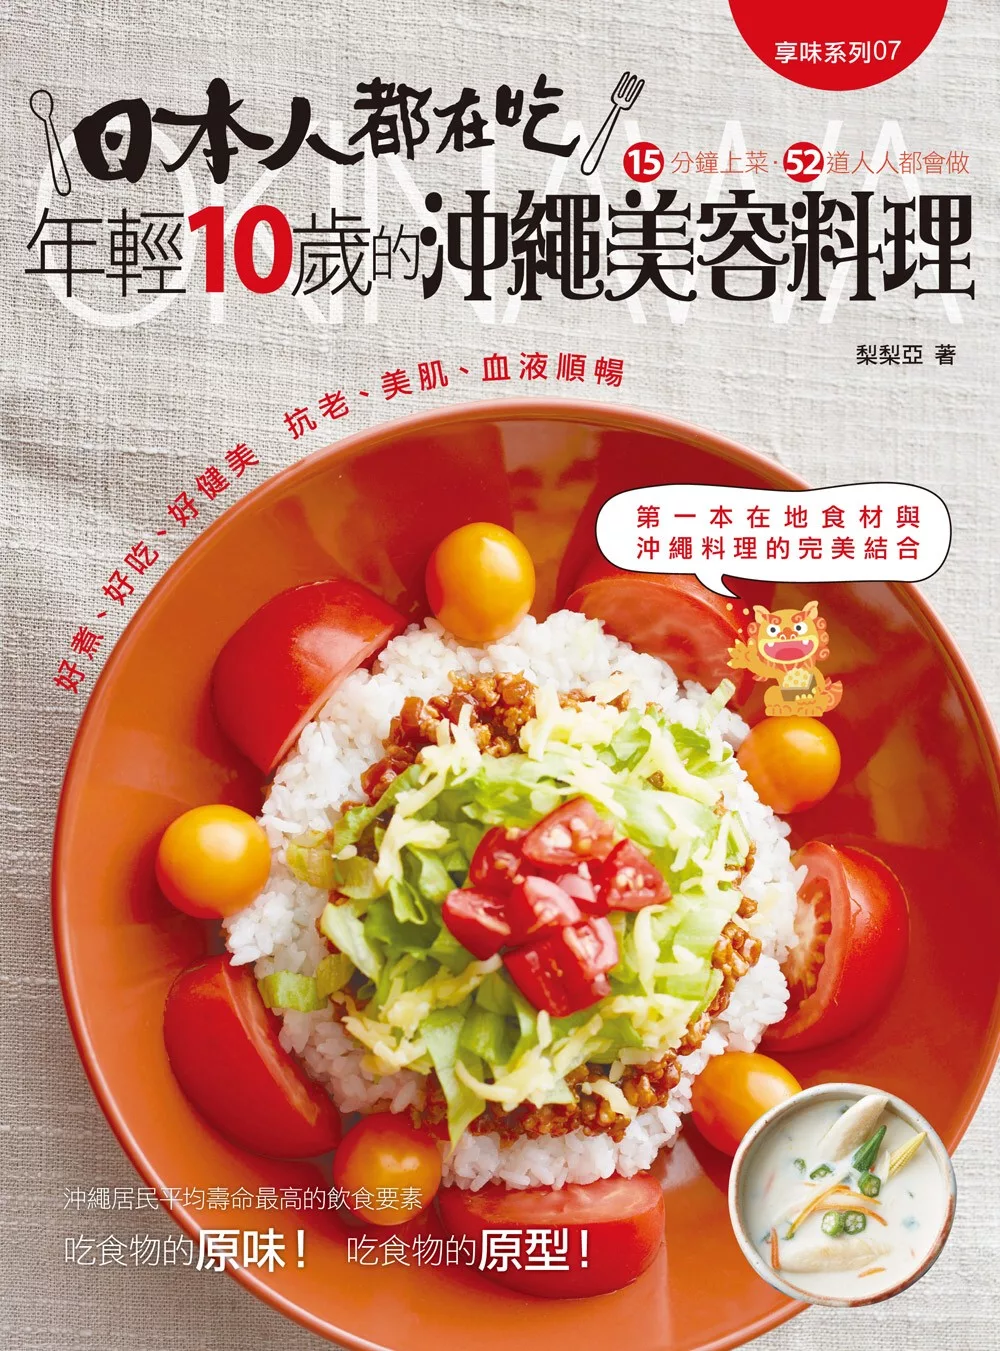 日本人都在吃 年輕10歲的沖繩美容料理